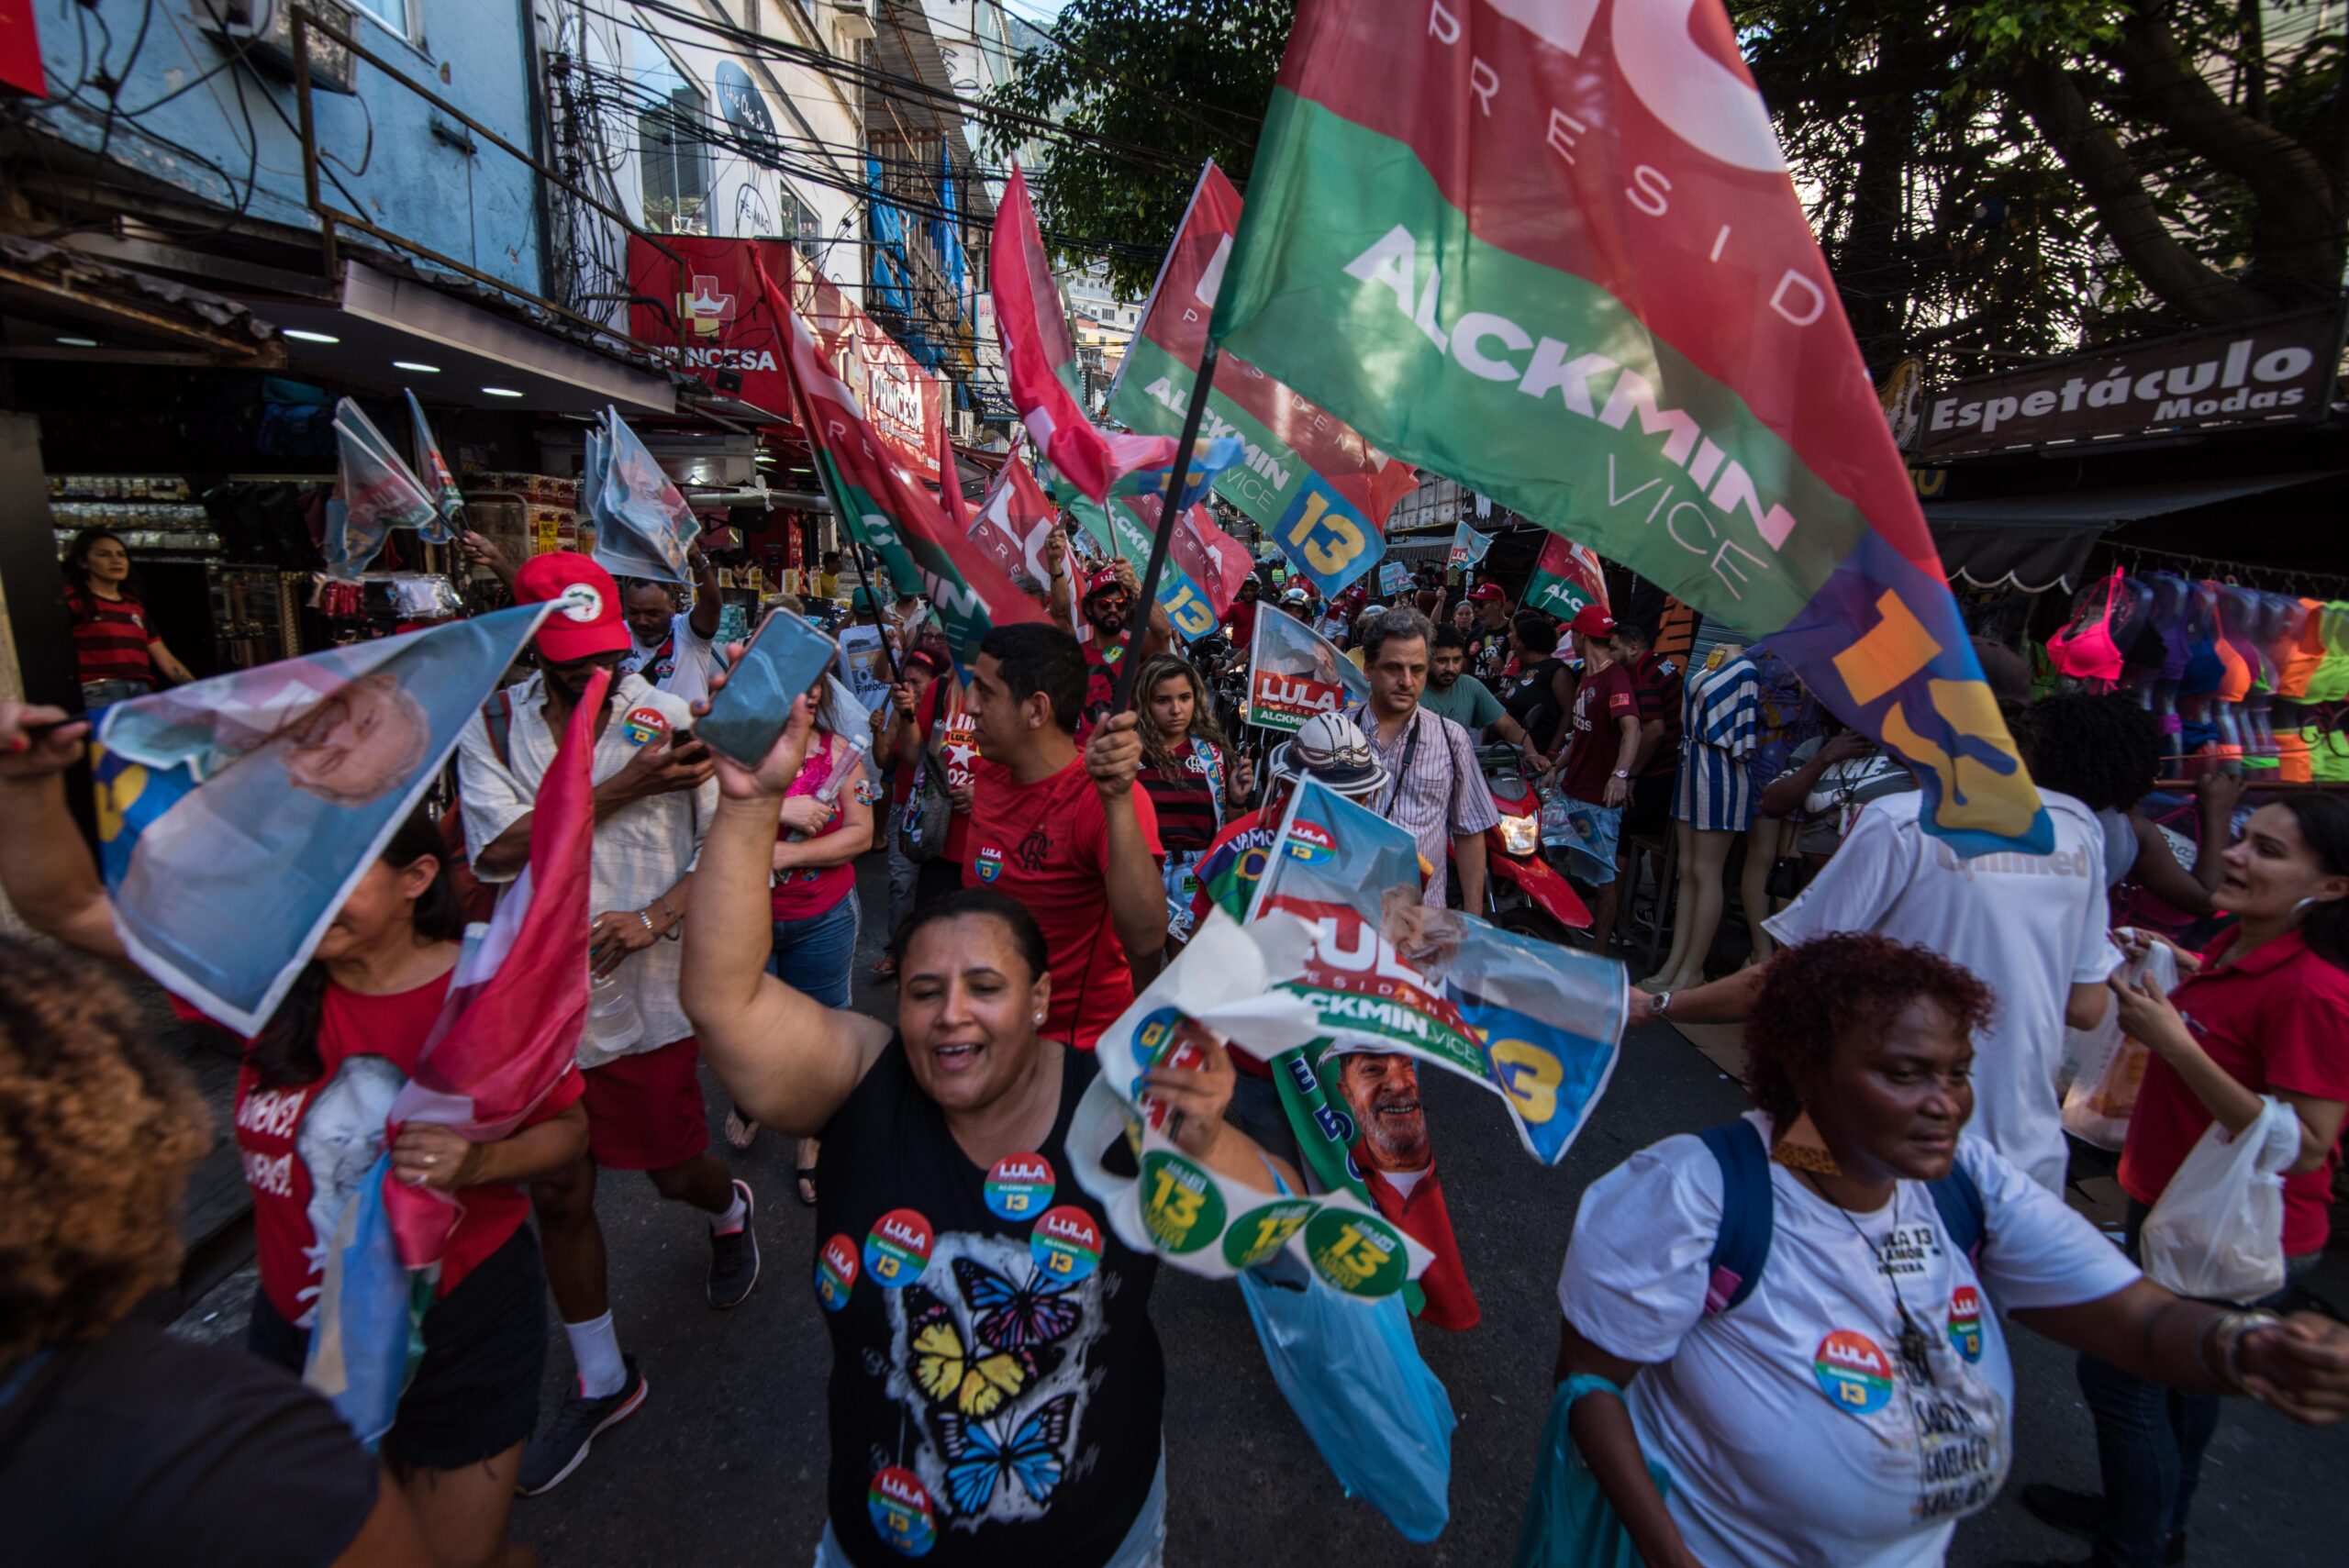 Manifestantes tomam a rua defendendo o legado de Lula nas favelas. Foto: Bárbara Dias/RioOnWatch